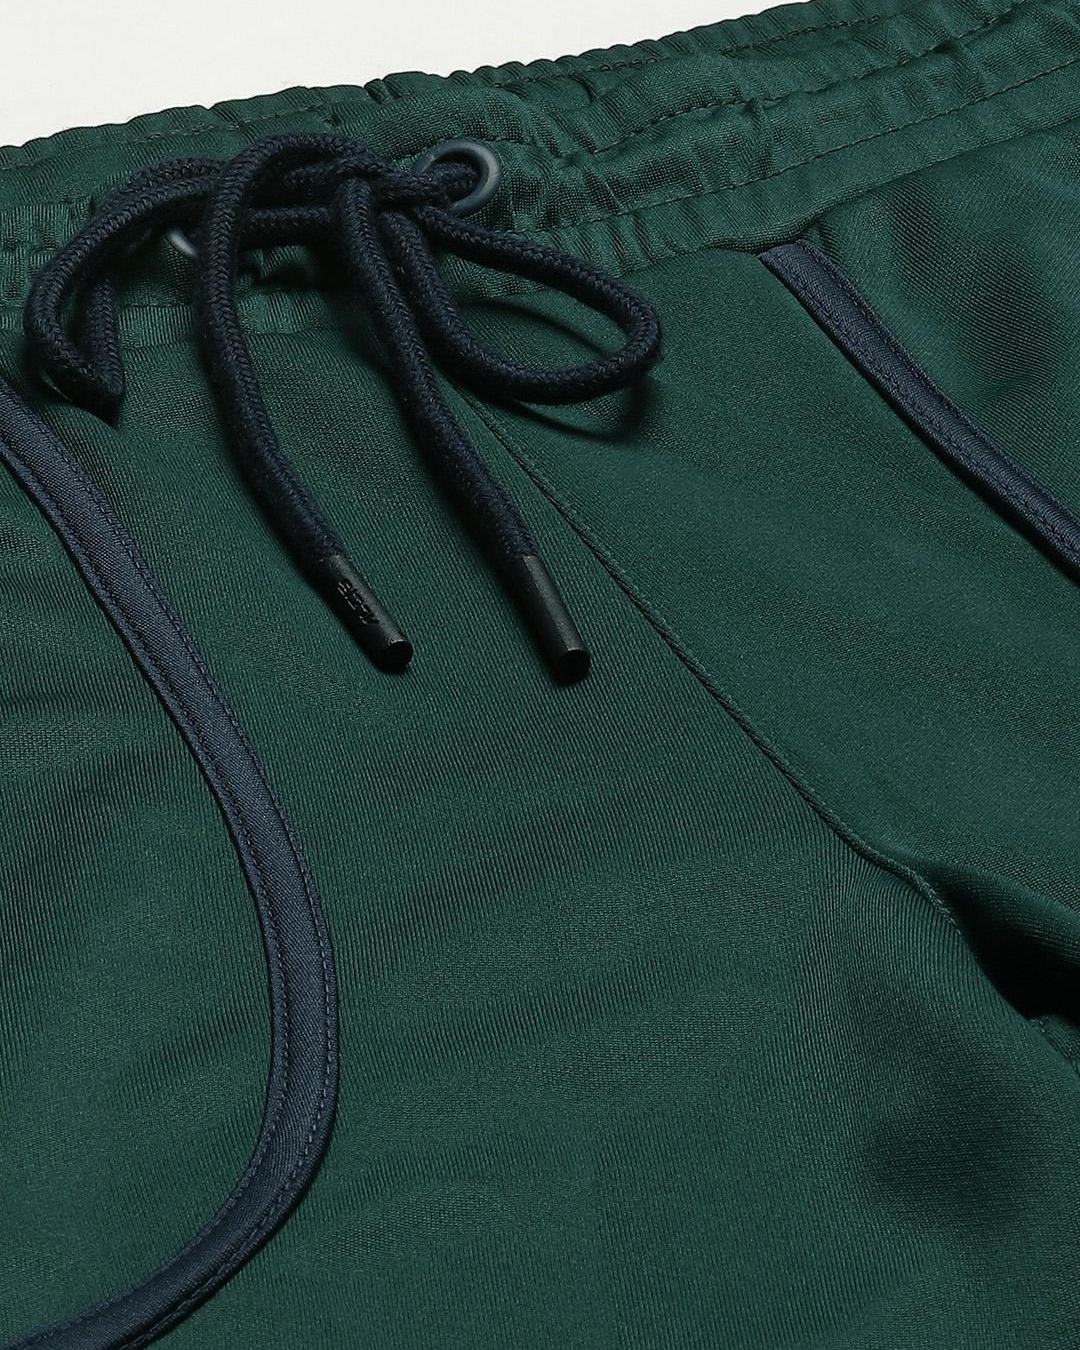 Buy Men's Green Slim Fit Track Pants for Men Green Online at Bewakoof